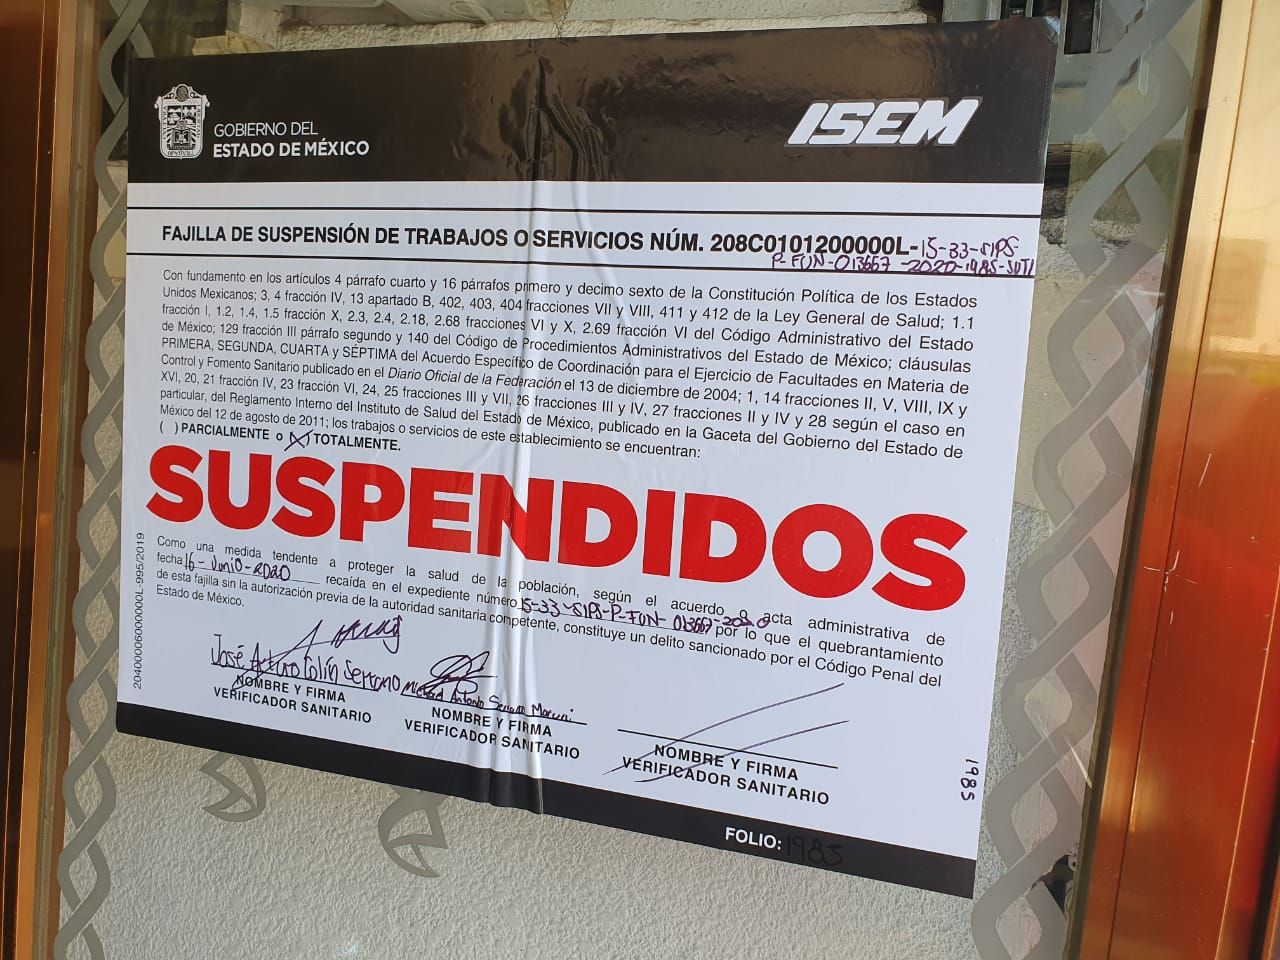 Suspende Coprisem 11 funerarias en el Estado de México